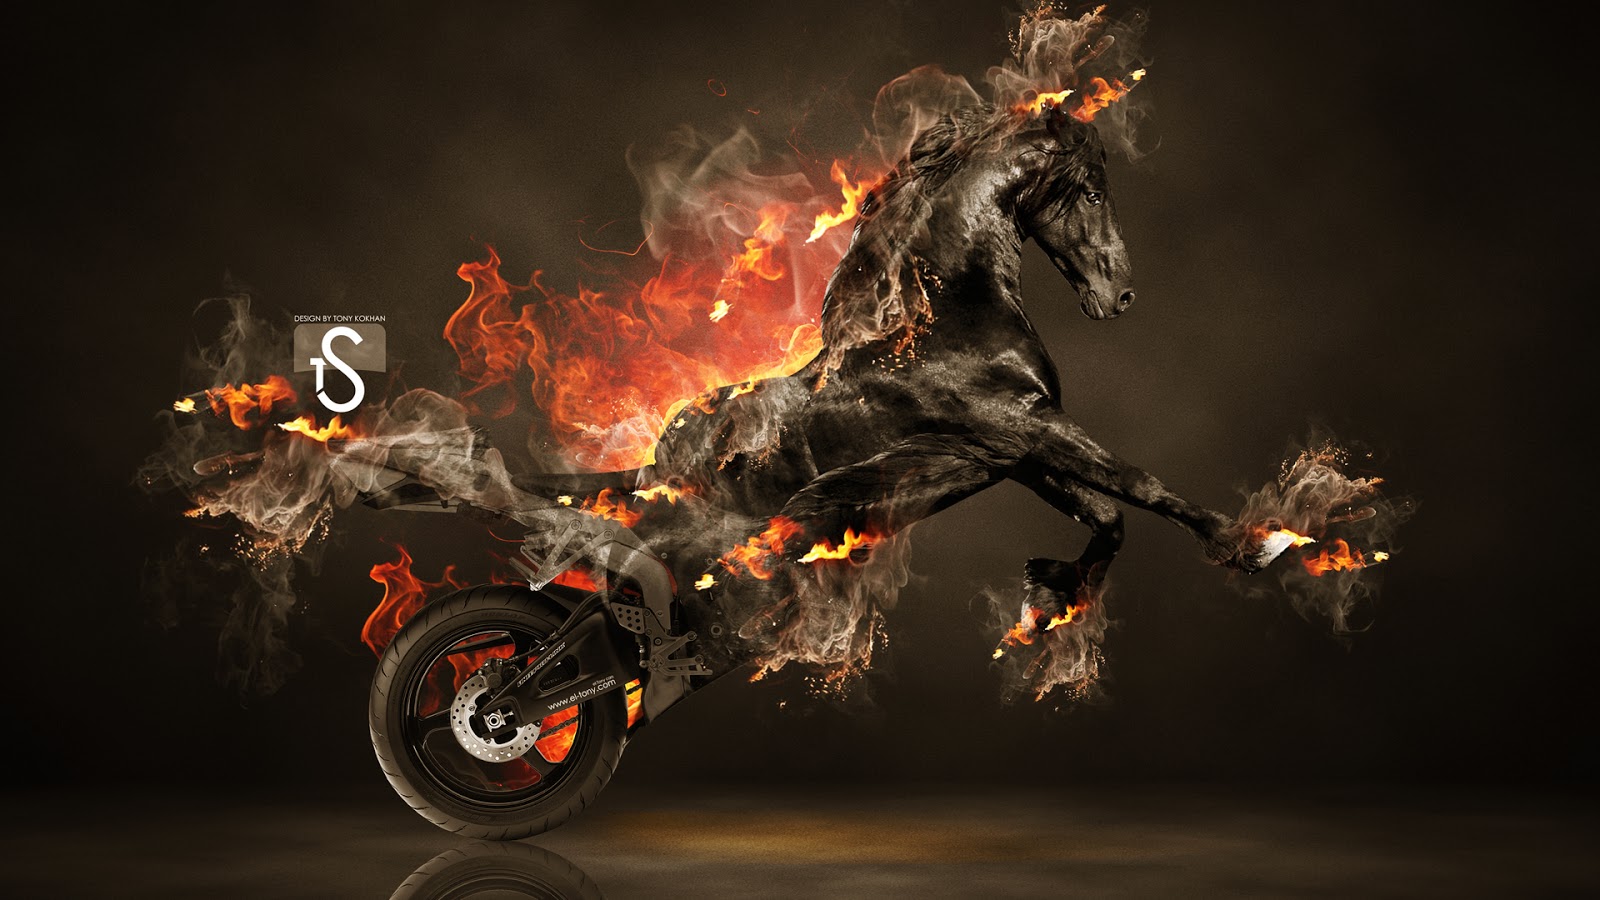 Fire Horse HD Wallpaper